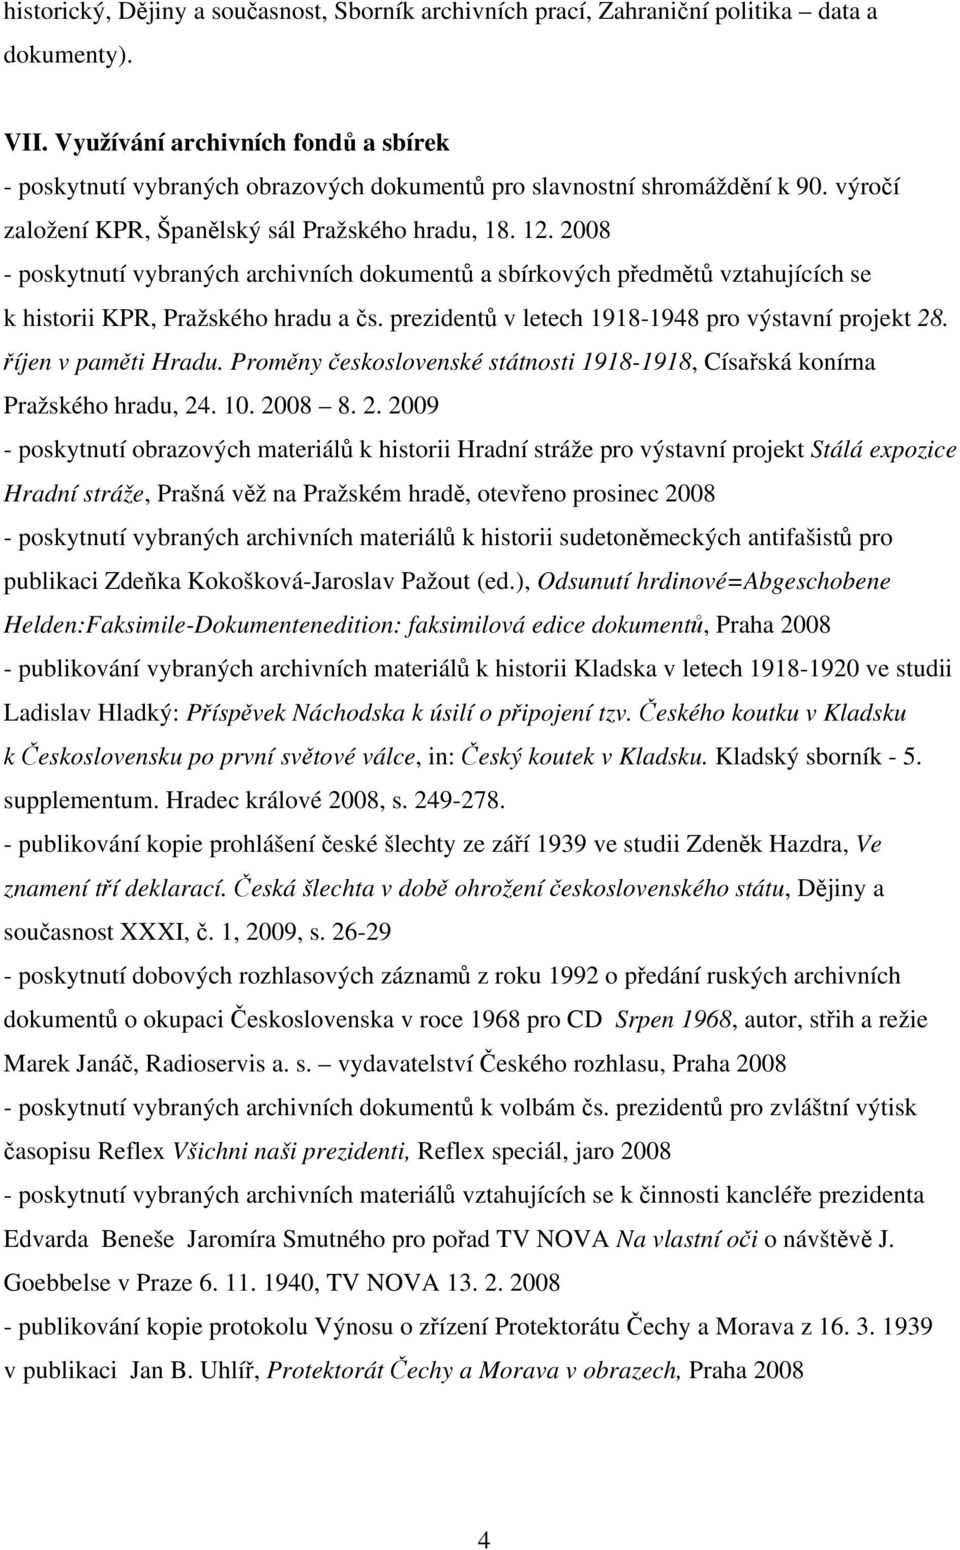 2008 - poskytnutí vybraných archivních dokumentů a sbírkových předmětů vztahujících se k historii KPR, Pražského hradu a čs. prezidentů v letech 1918-1948 pro výstavní projekt 28.